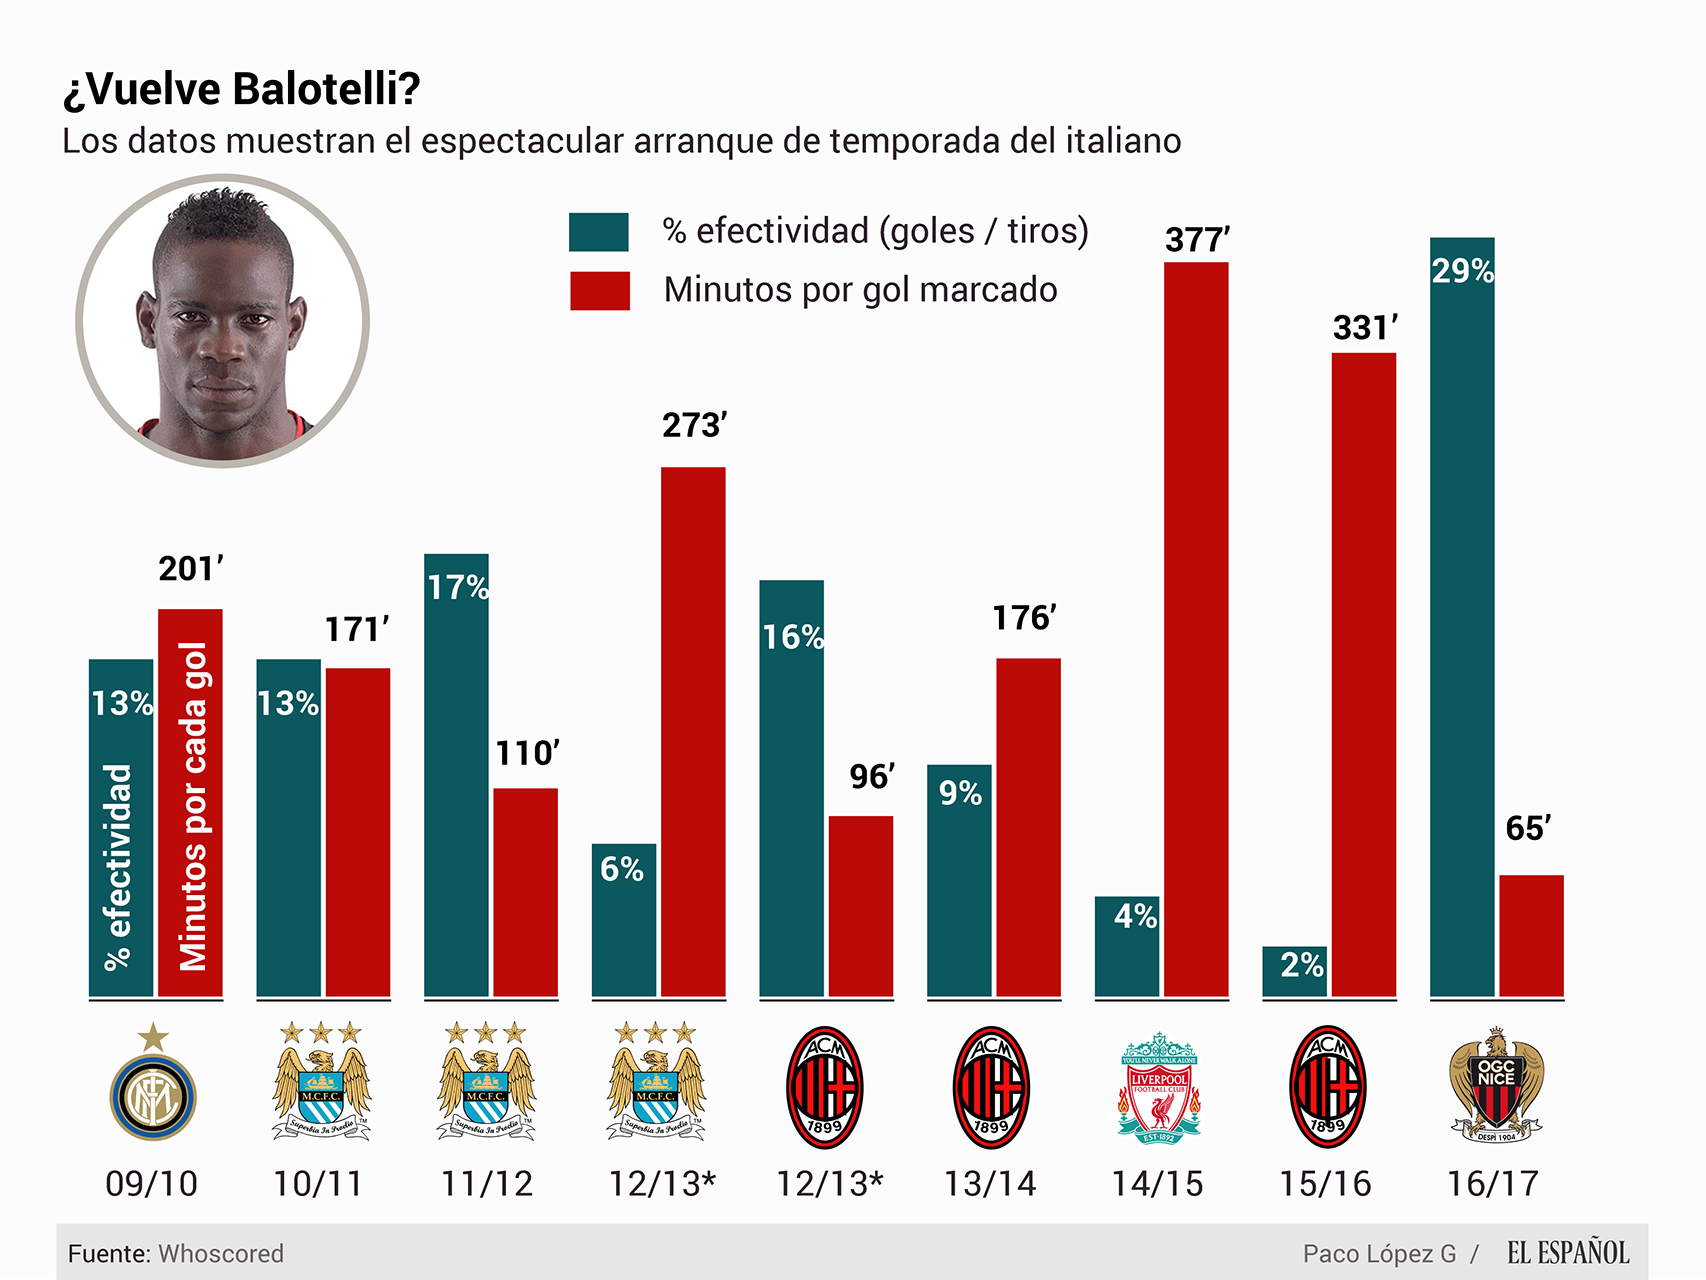 Cifras de Mario Balotelli durante su carrera.